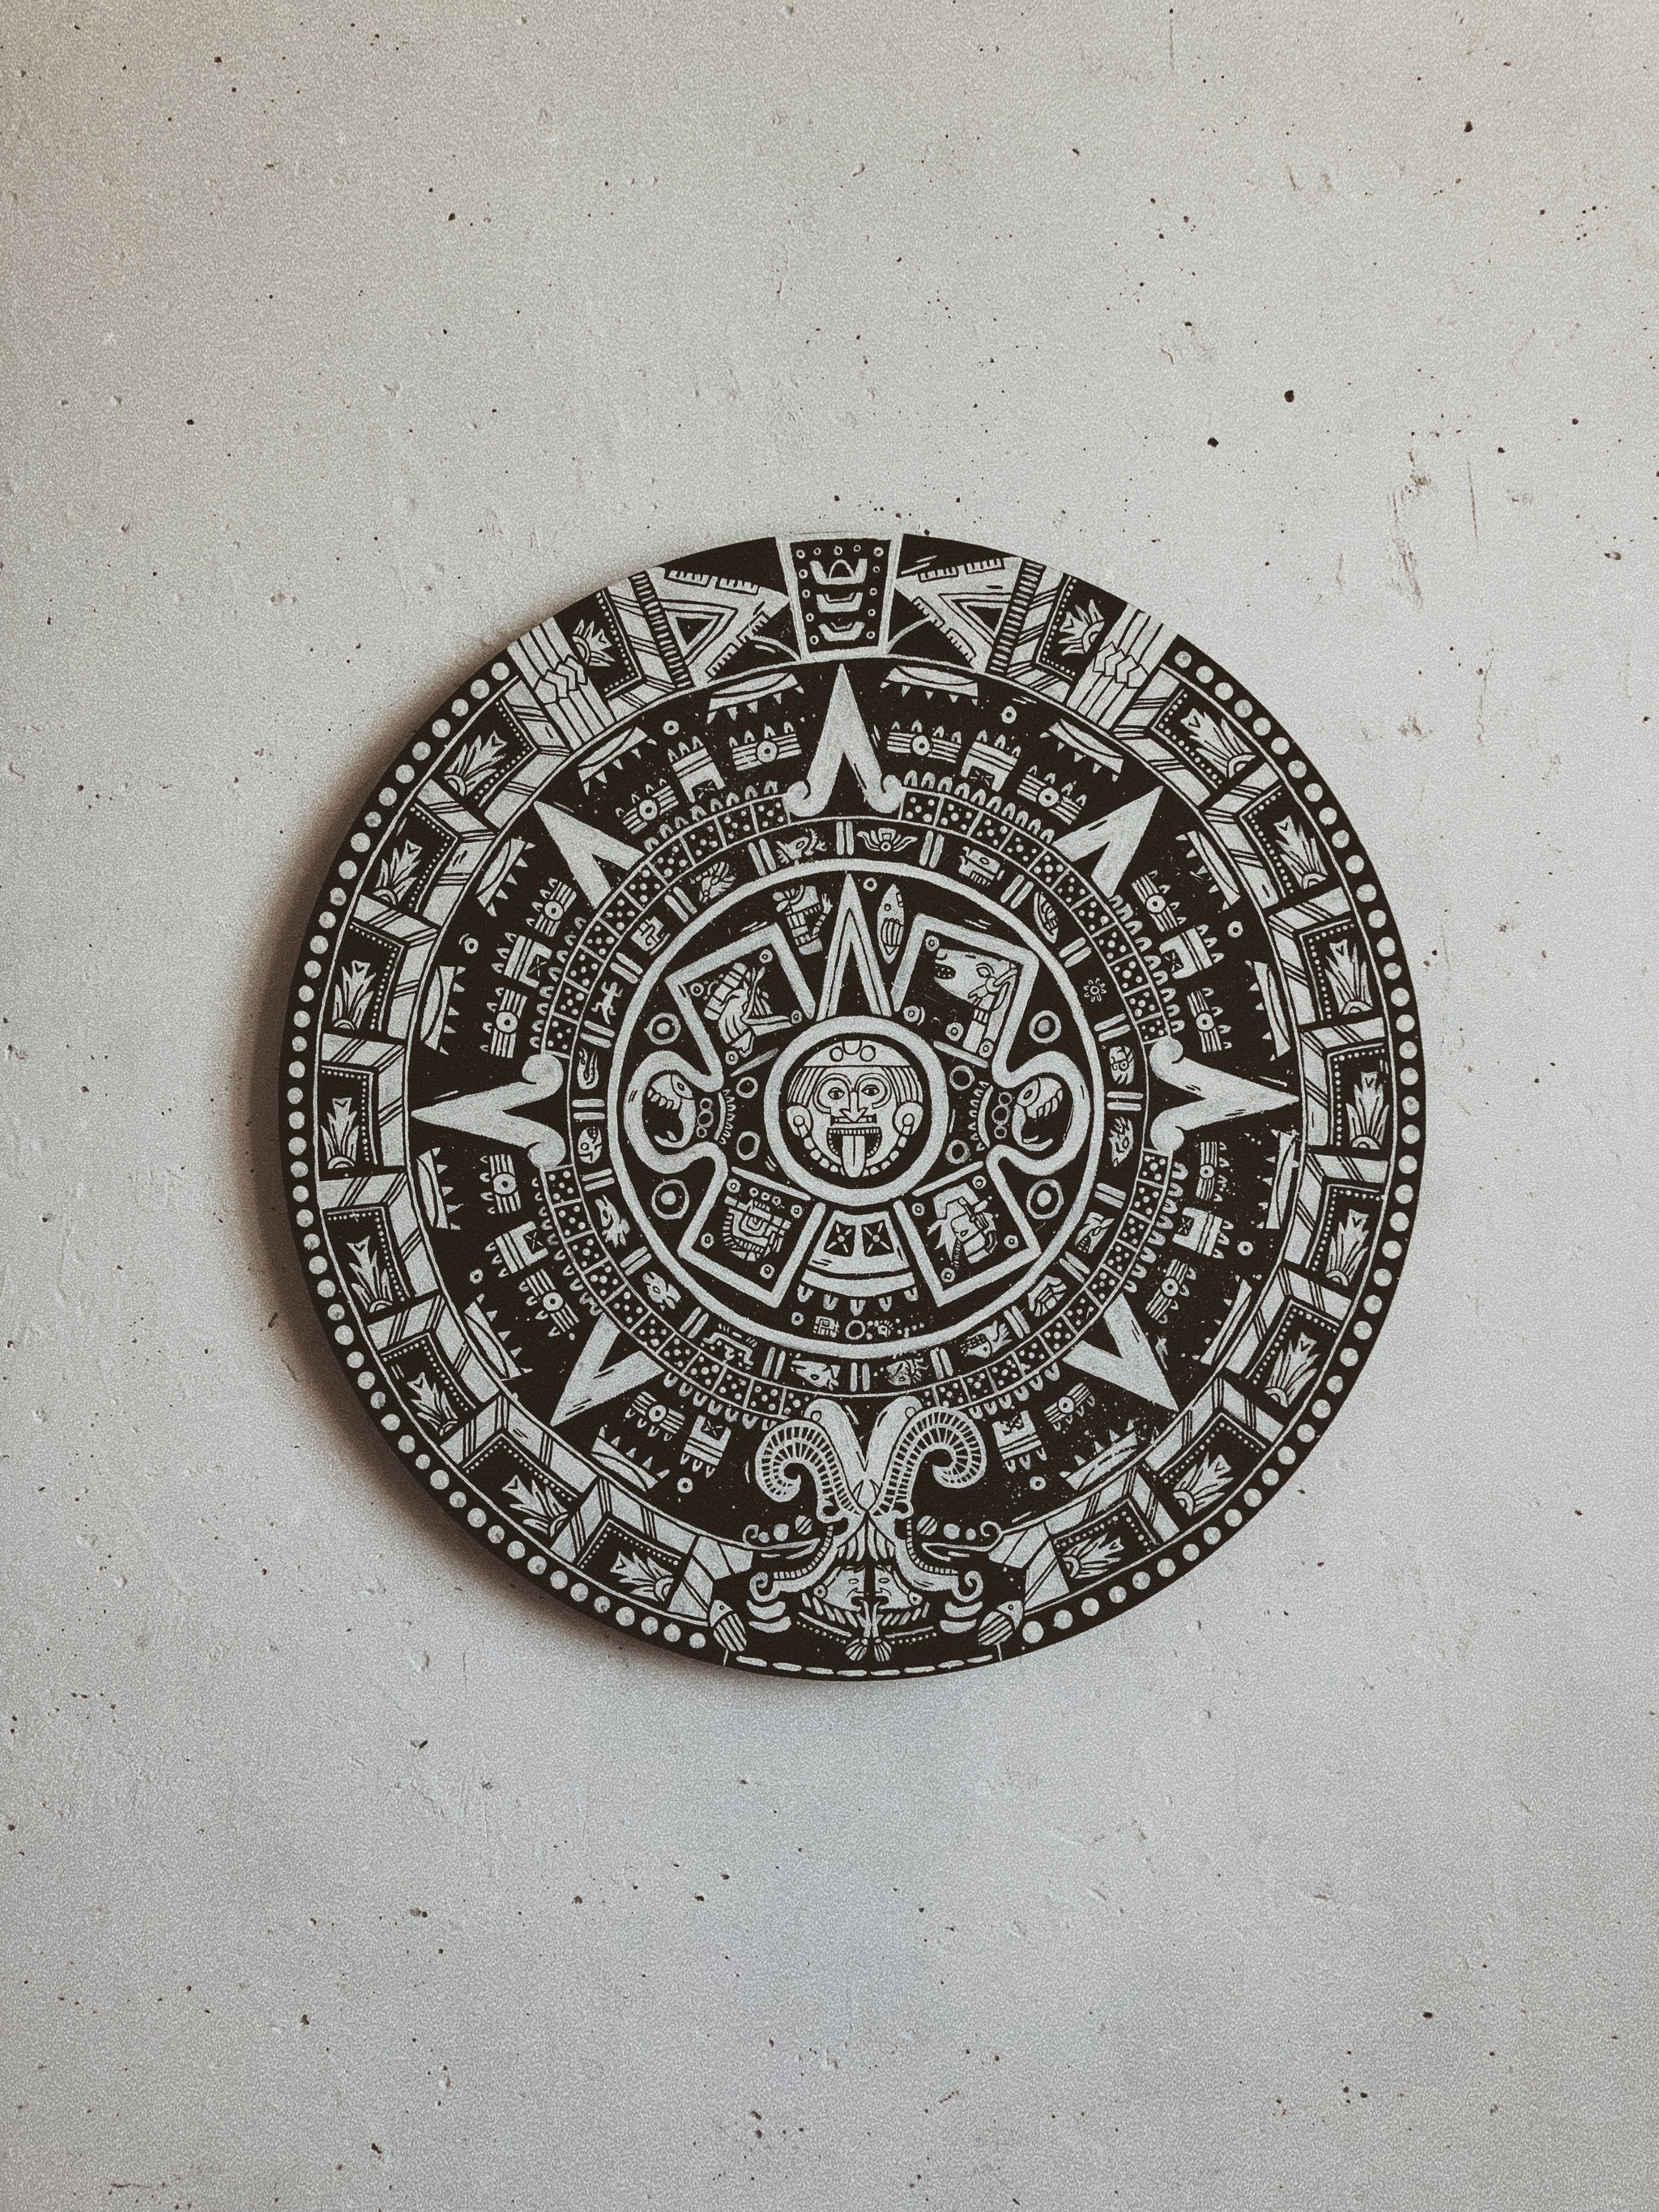 Календарь майя и повторение – мать учения